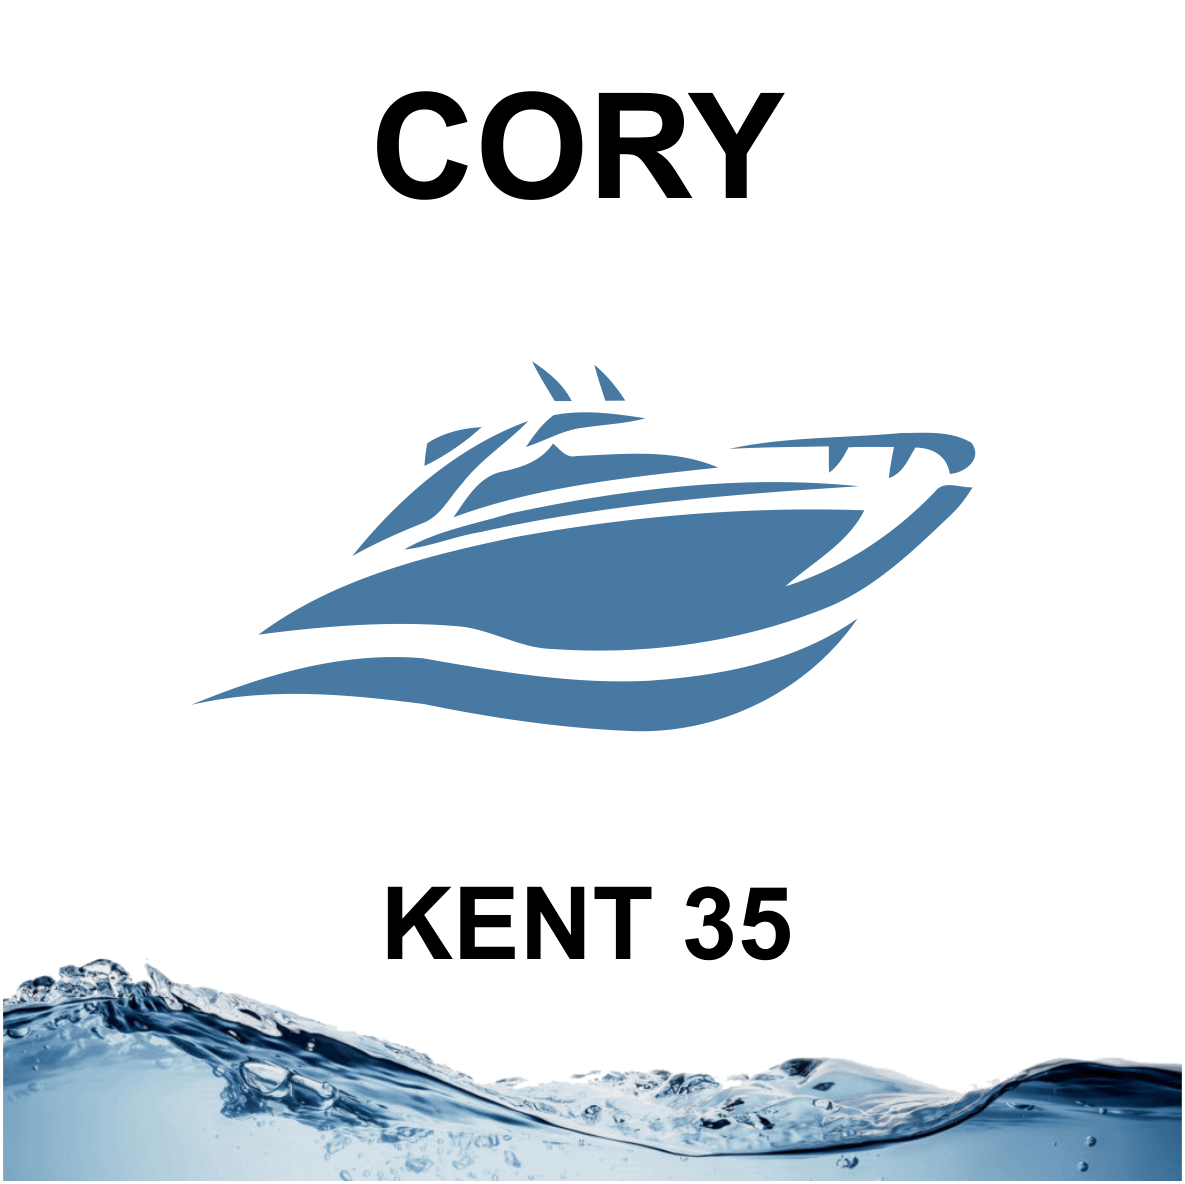 Cory Kent 35